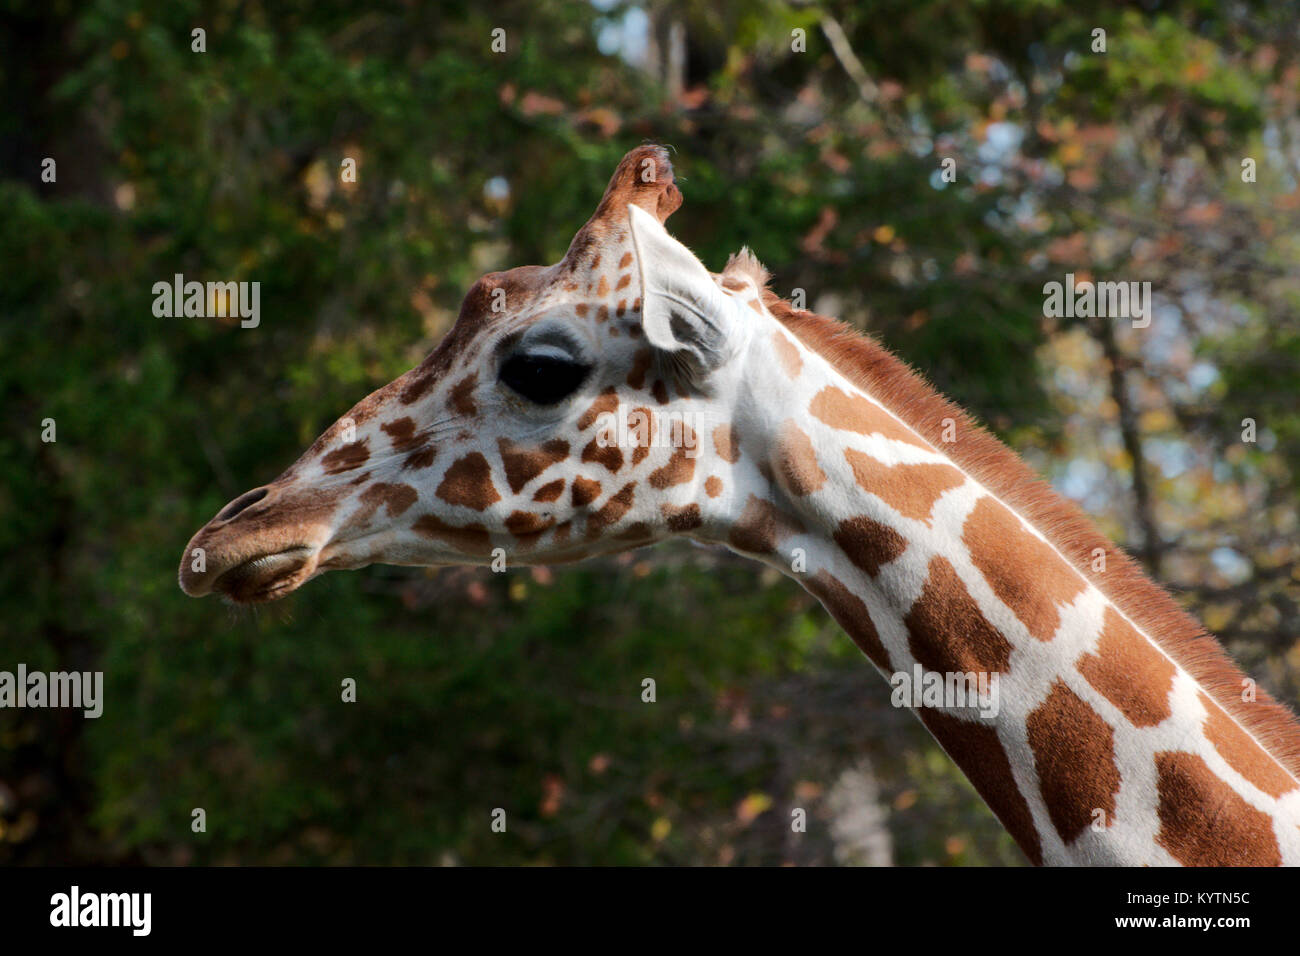 Single giraffe standing Stock Photo